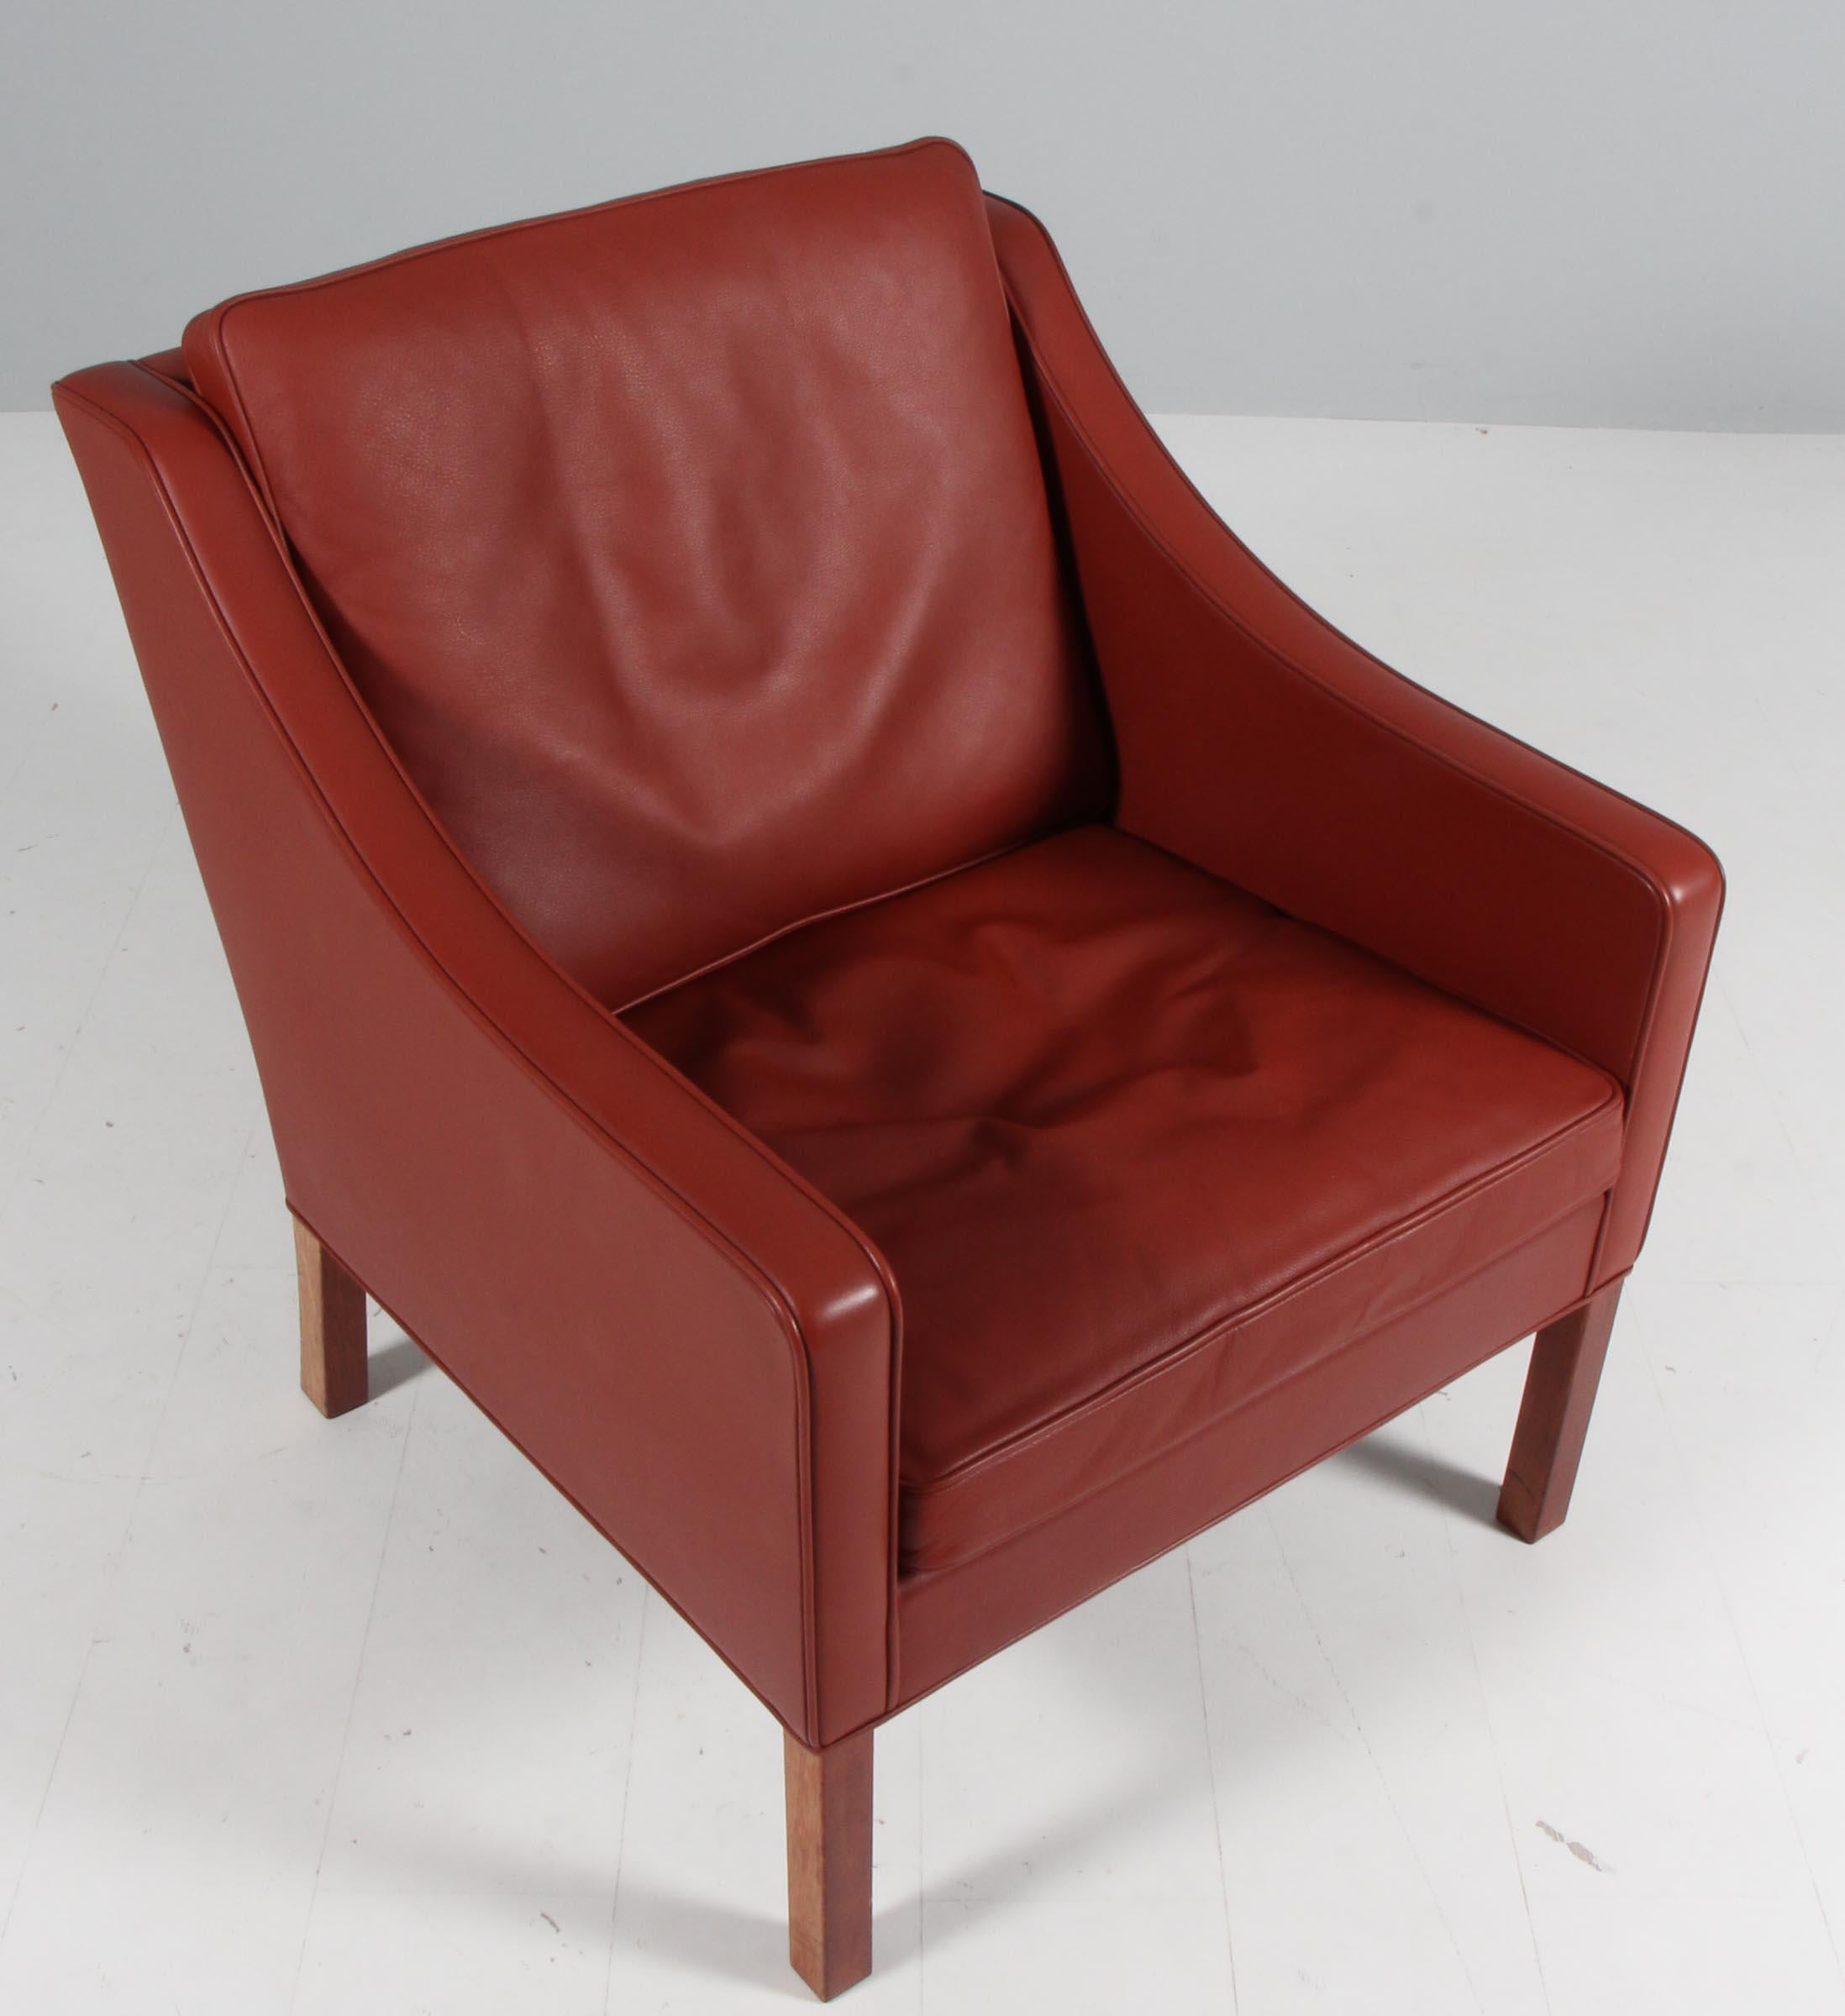 Chaise de salon Børge Mogensen recouverte de cuir rouge patiné.

Pieds en teck.

Modèle 2207, fabriqué par Fredericia furniture.